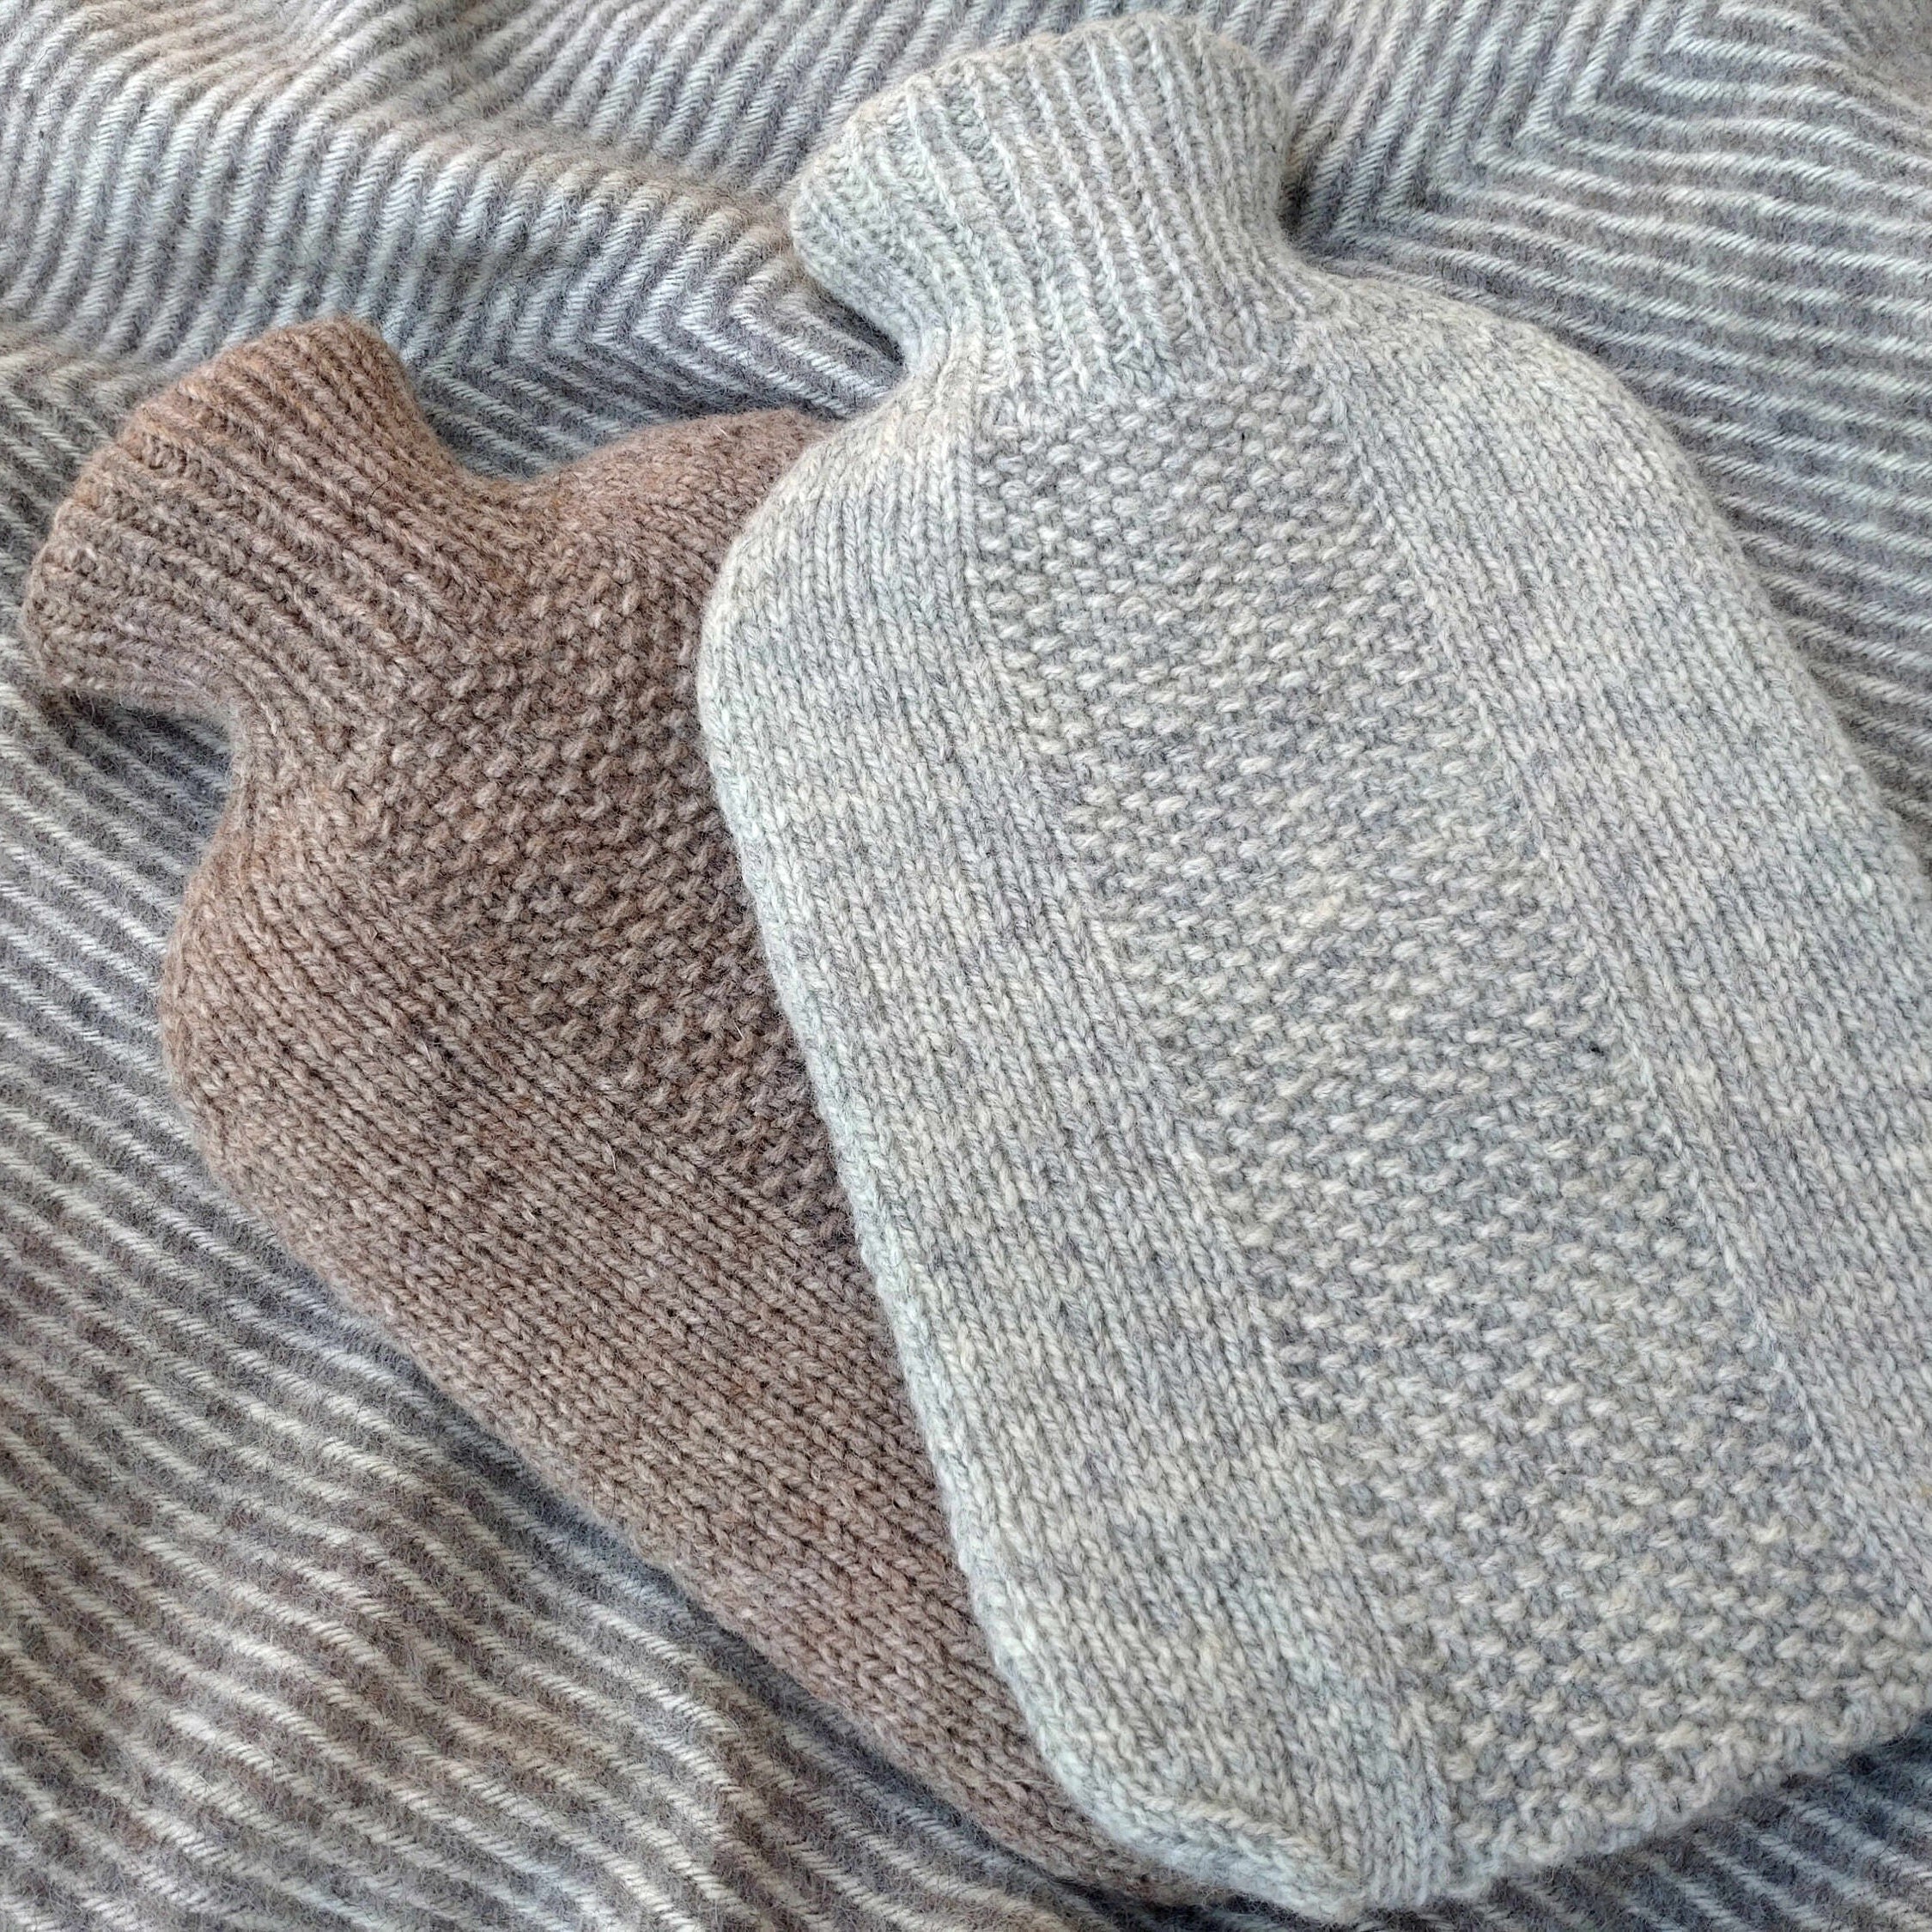 Hot water bottle cover virgin wool, Natural white/light gray